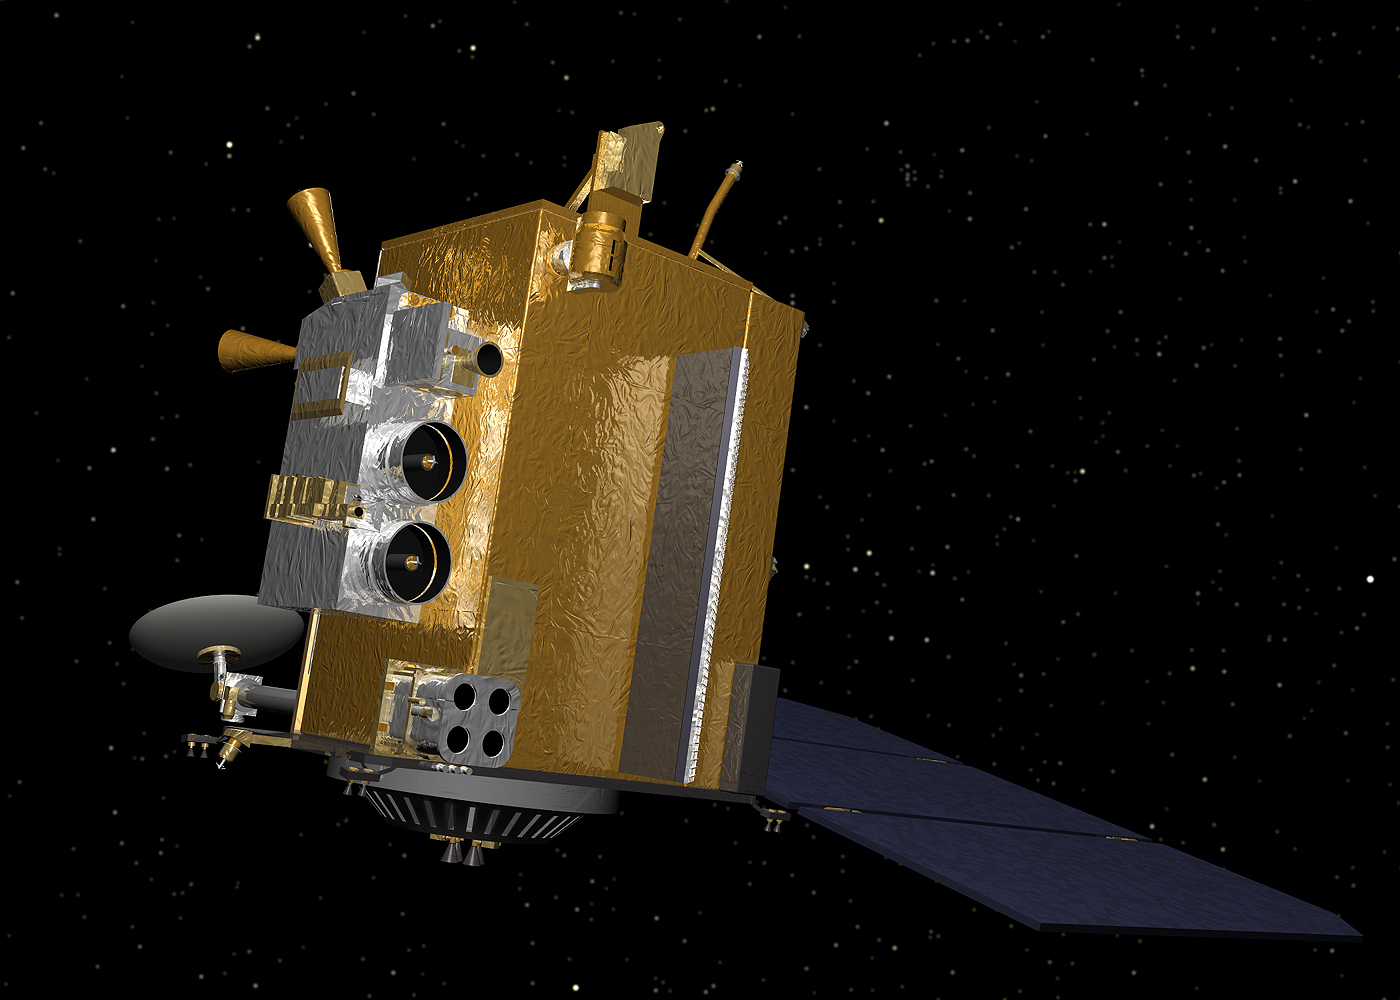 Fot. 1 - Lunar Reconnaissance Orbiter